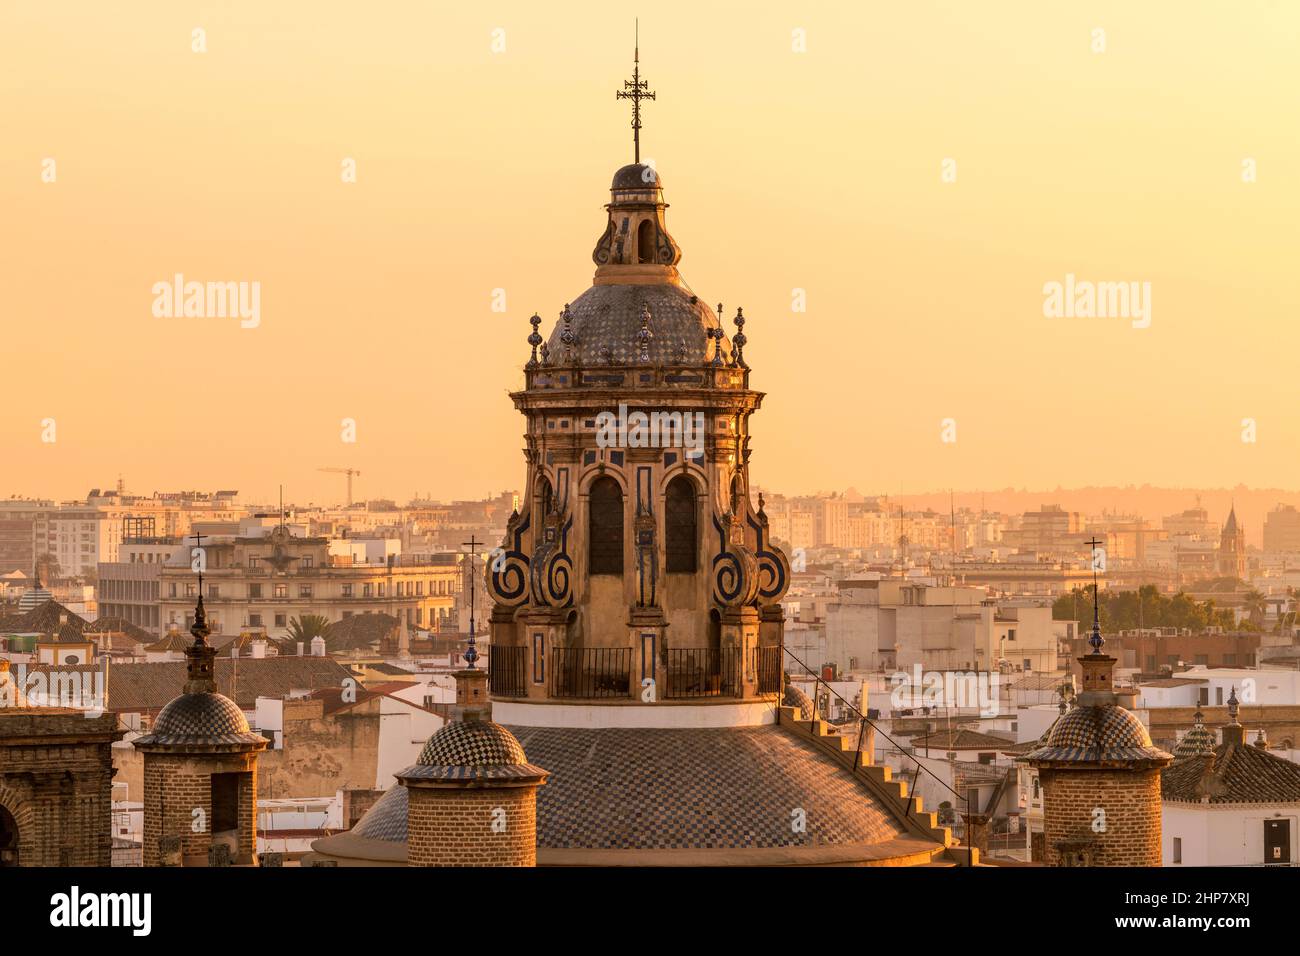 Sonnenuntergang in Sevilla - Nahaufnahme der Kuppel und des Glockenturms auf der Spitze der im Renaissancestil des 16th. Jahrhunderts erbauten Kirche der Verkündigung, Sevilla, Spanien. Stockfoto